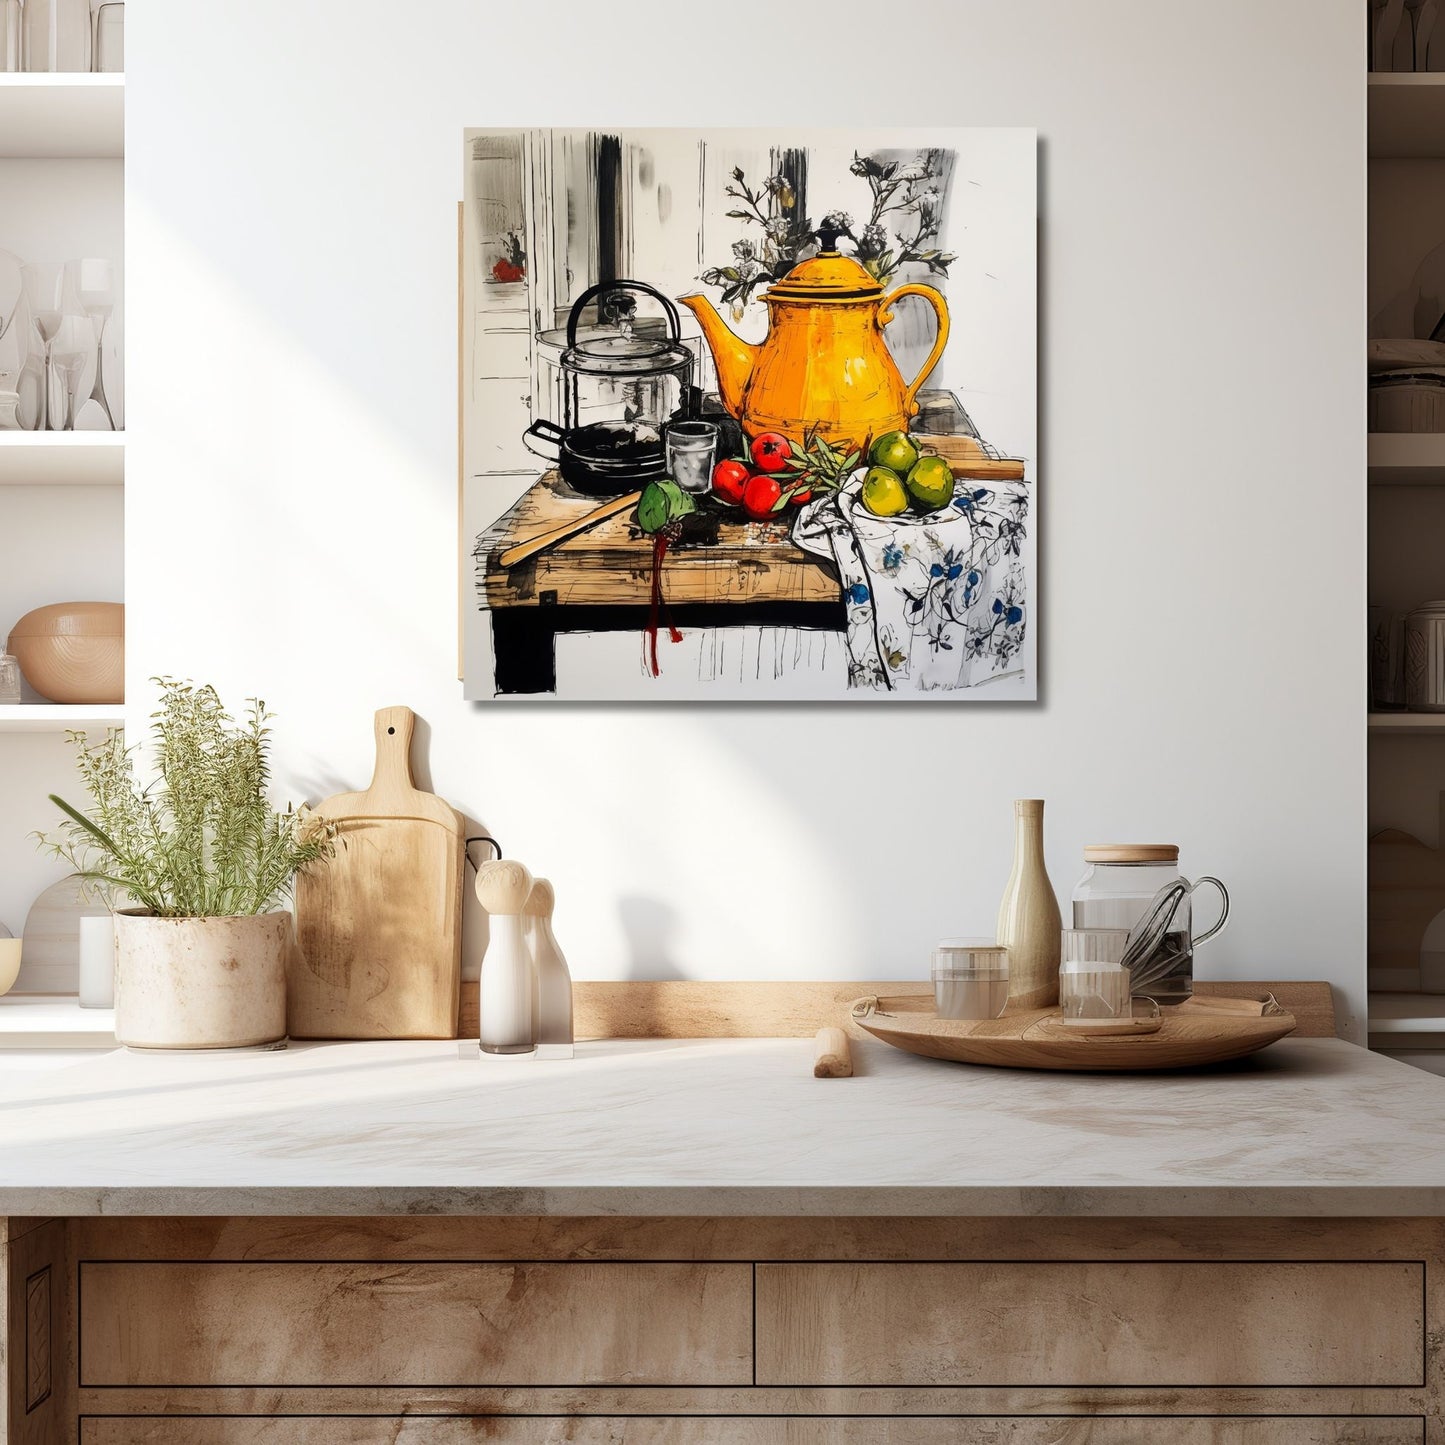 Håndtegnet grafisk illustrasjon som viser et vakkert borddekor med en gledesfylt gul tekanne, friske frukter og en fortryllende vase med blomster.  Illustrasjonen viser motivet på lerret som henger over en kjøkkenbenk.